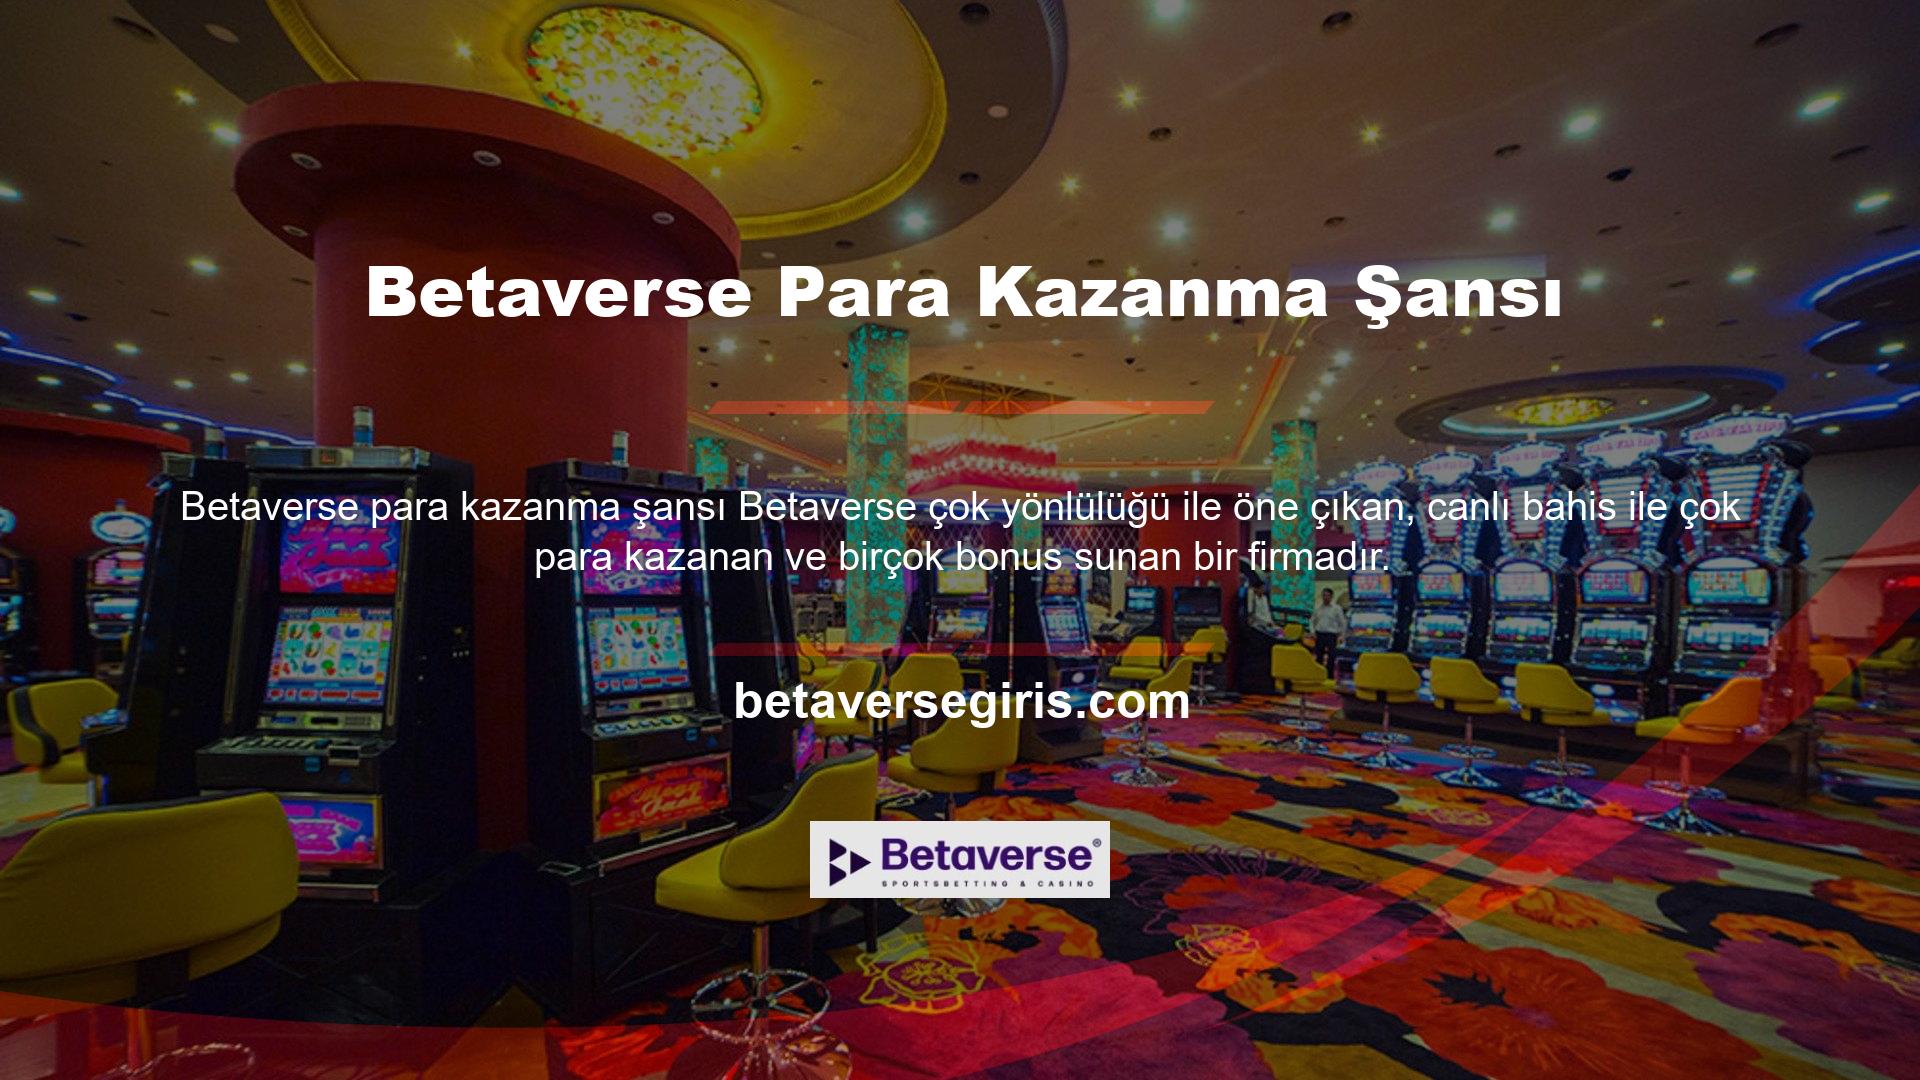 Betaverse canlı bahisinin sadece canlı bir casino olduğunu söylemek yanlış olur